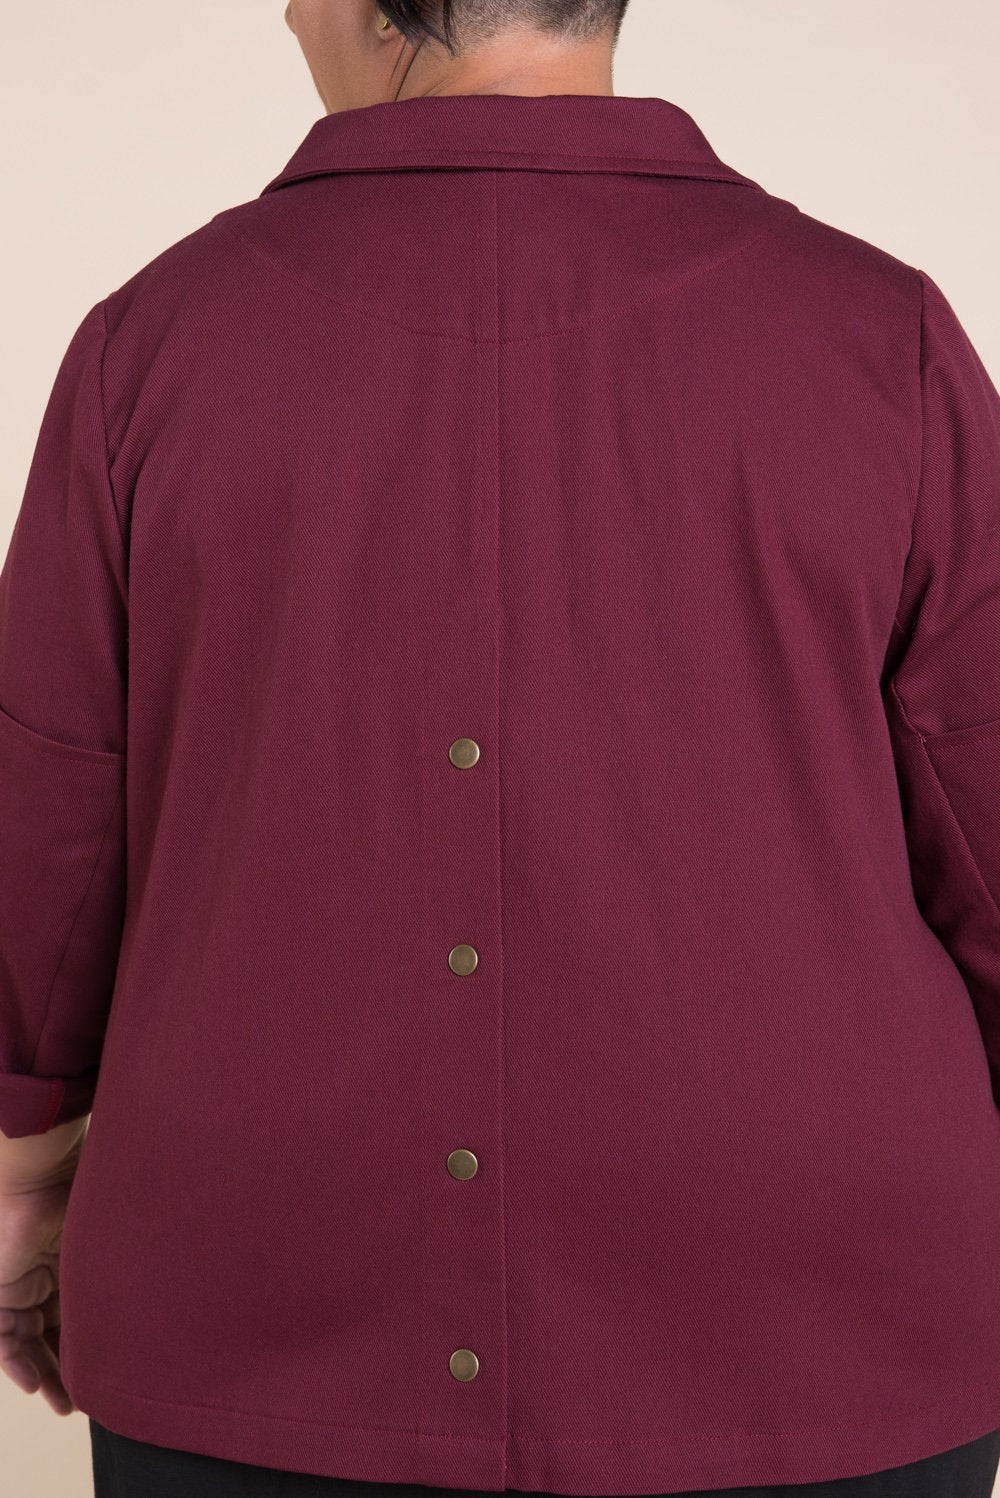 Sienna Maker Jacket Pattern – Core Fabrics